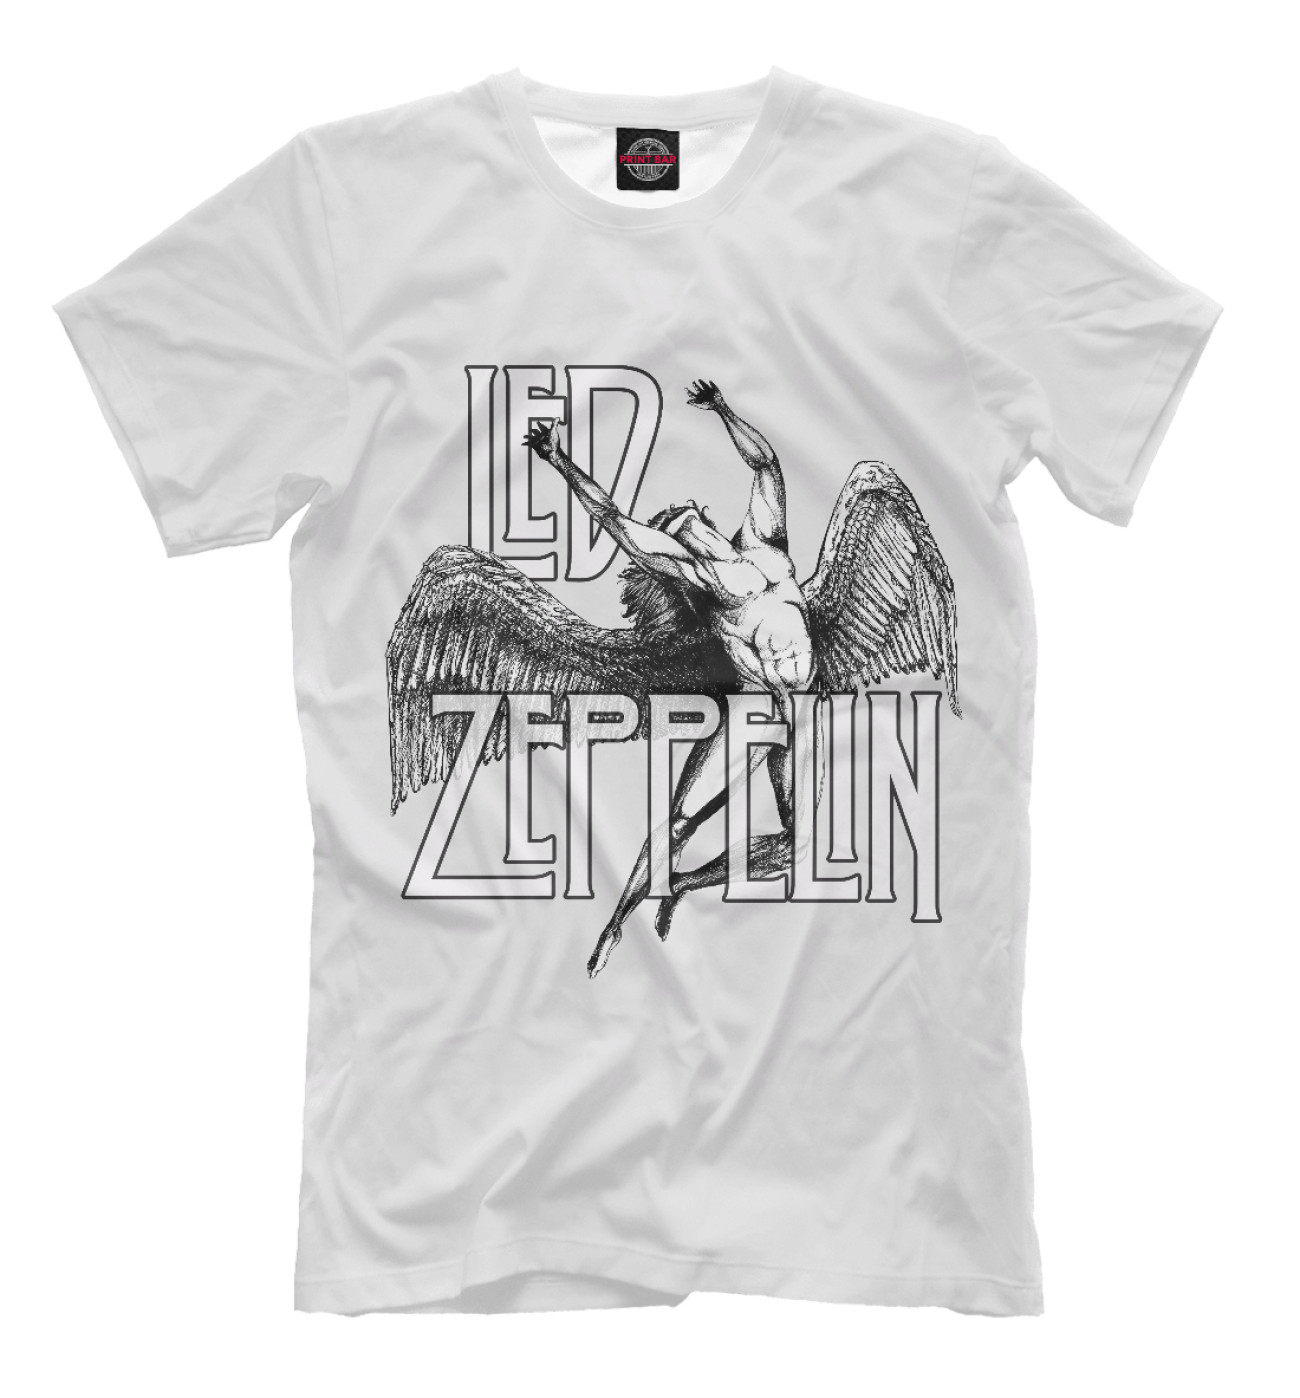 Мужская Футболка Led Zeppelin, артикул: MZK-131109-fut-2